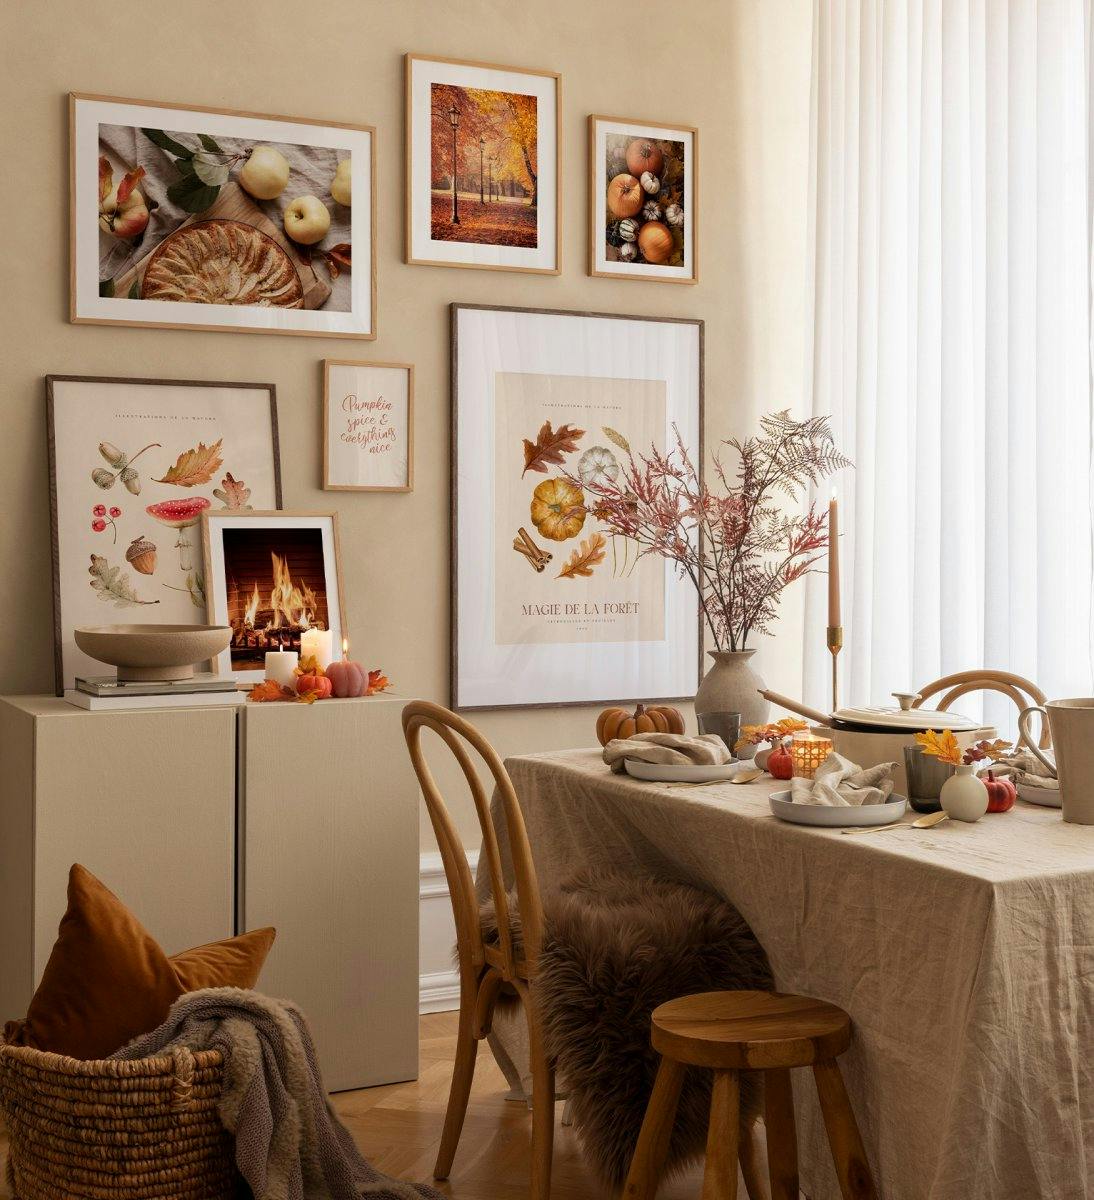 Transformeer je woonkamer in een gezellige ruimte met deze fotowand, mooi gepresenteerd in eiken kaders!